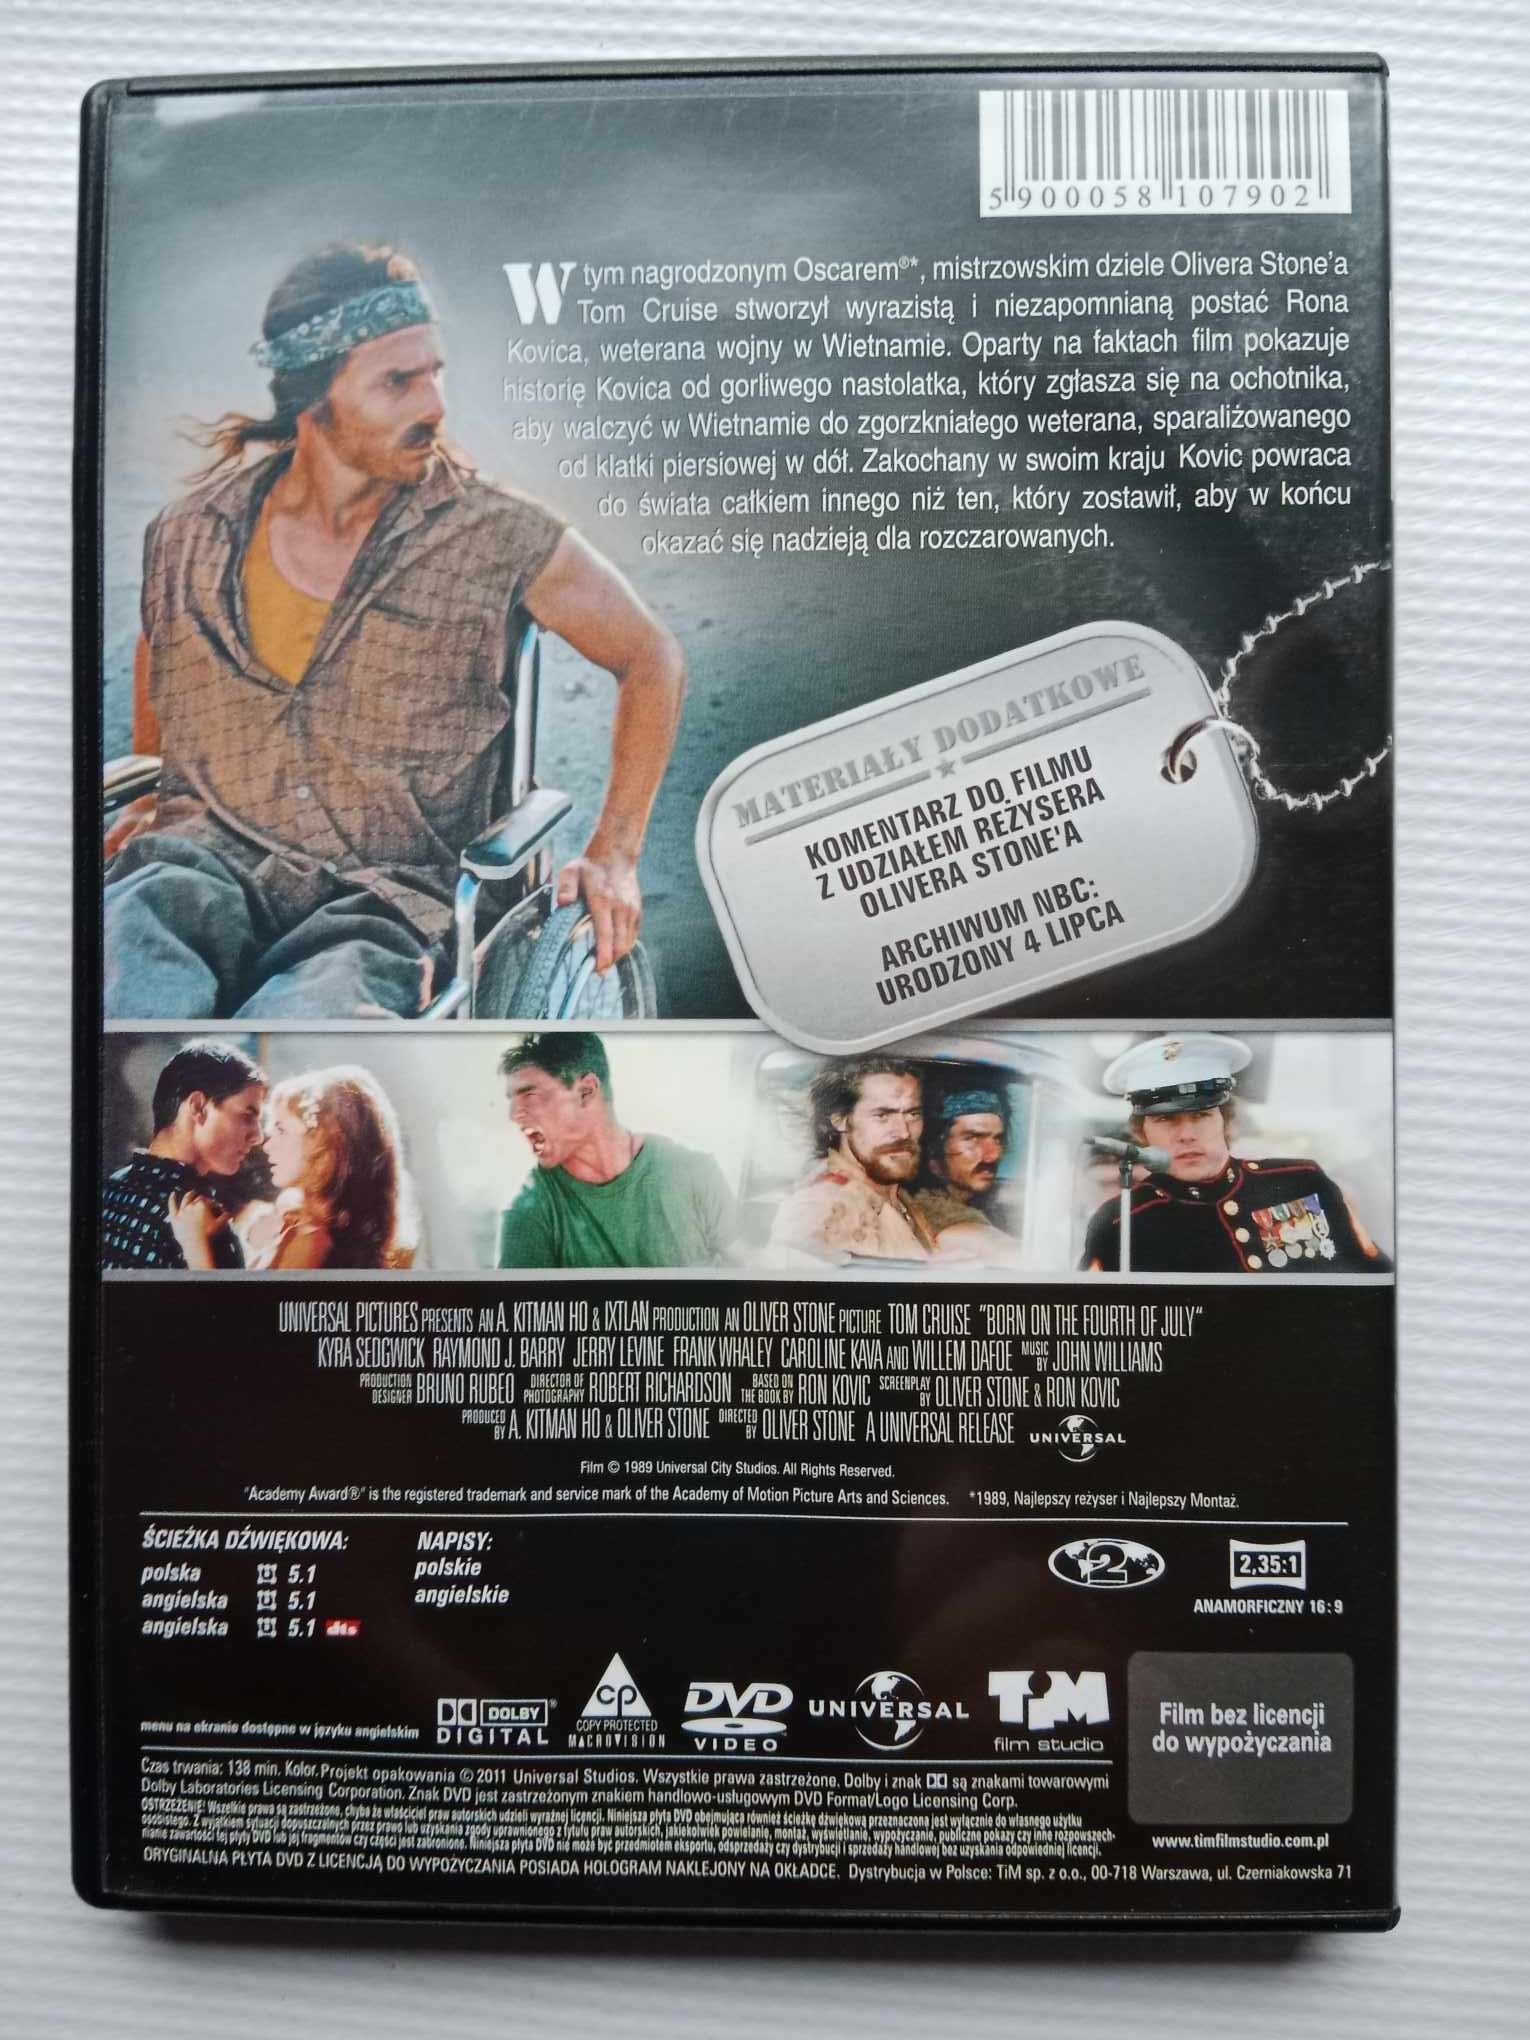 Film dvd Urodzony 4 Lipca Tom Cruise, edycja specjalna